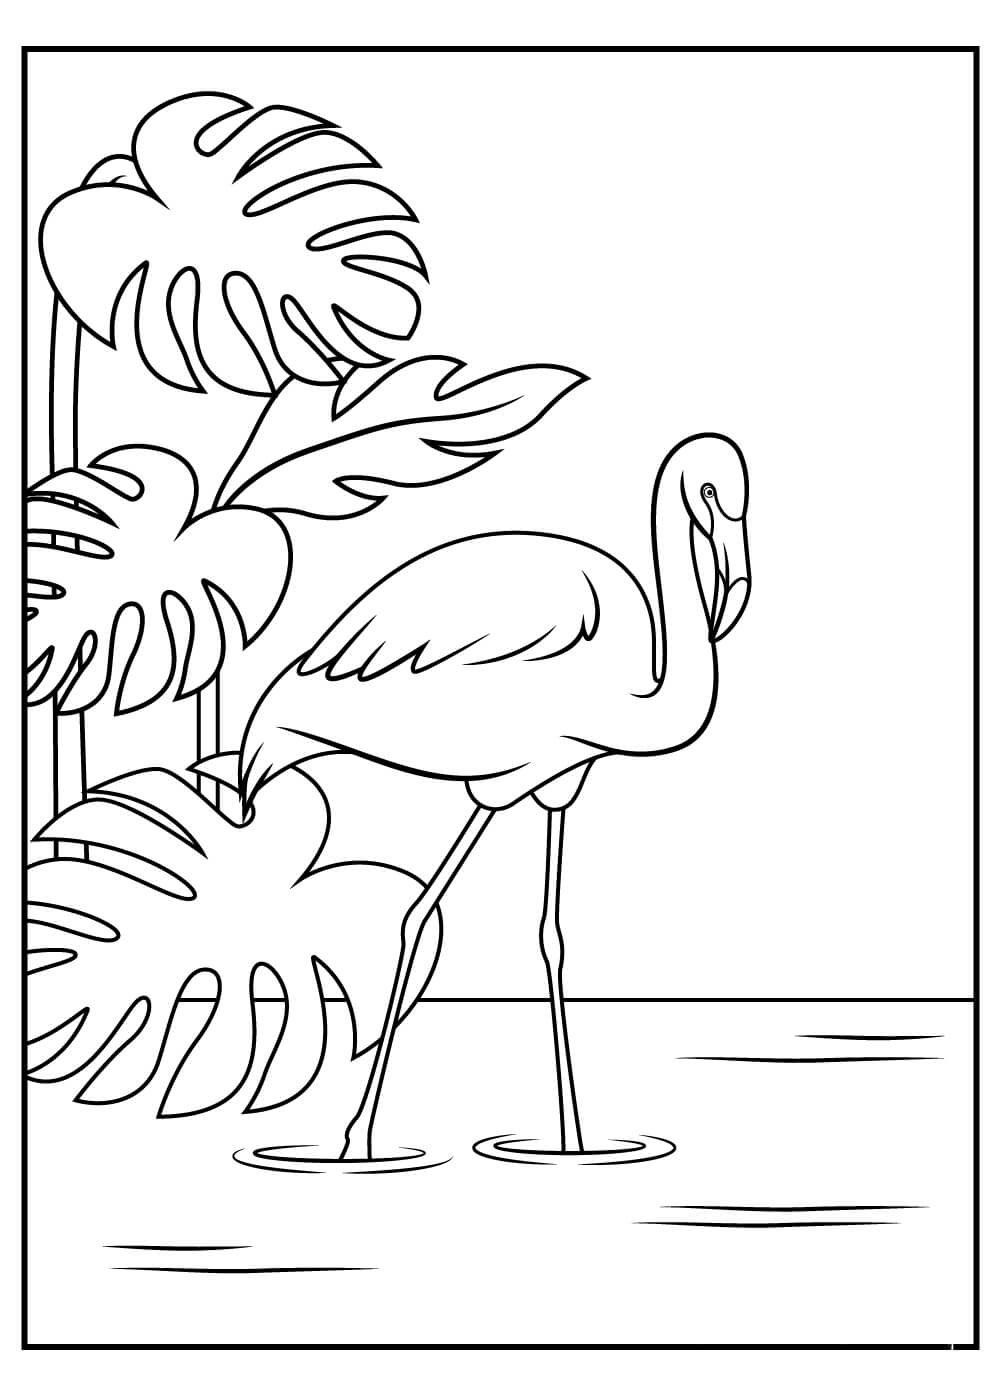 Imagens grátis de Flamingos para colorir